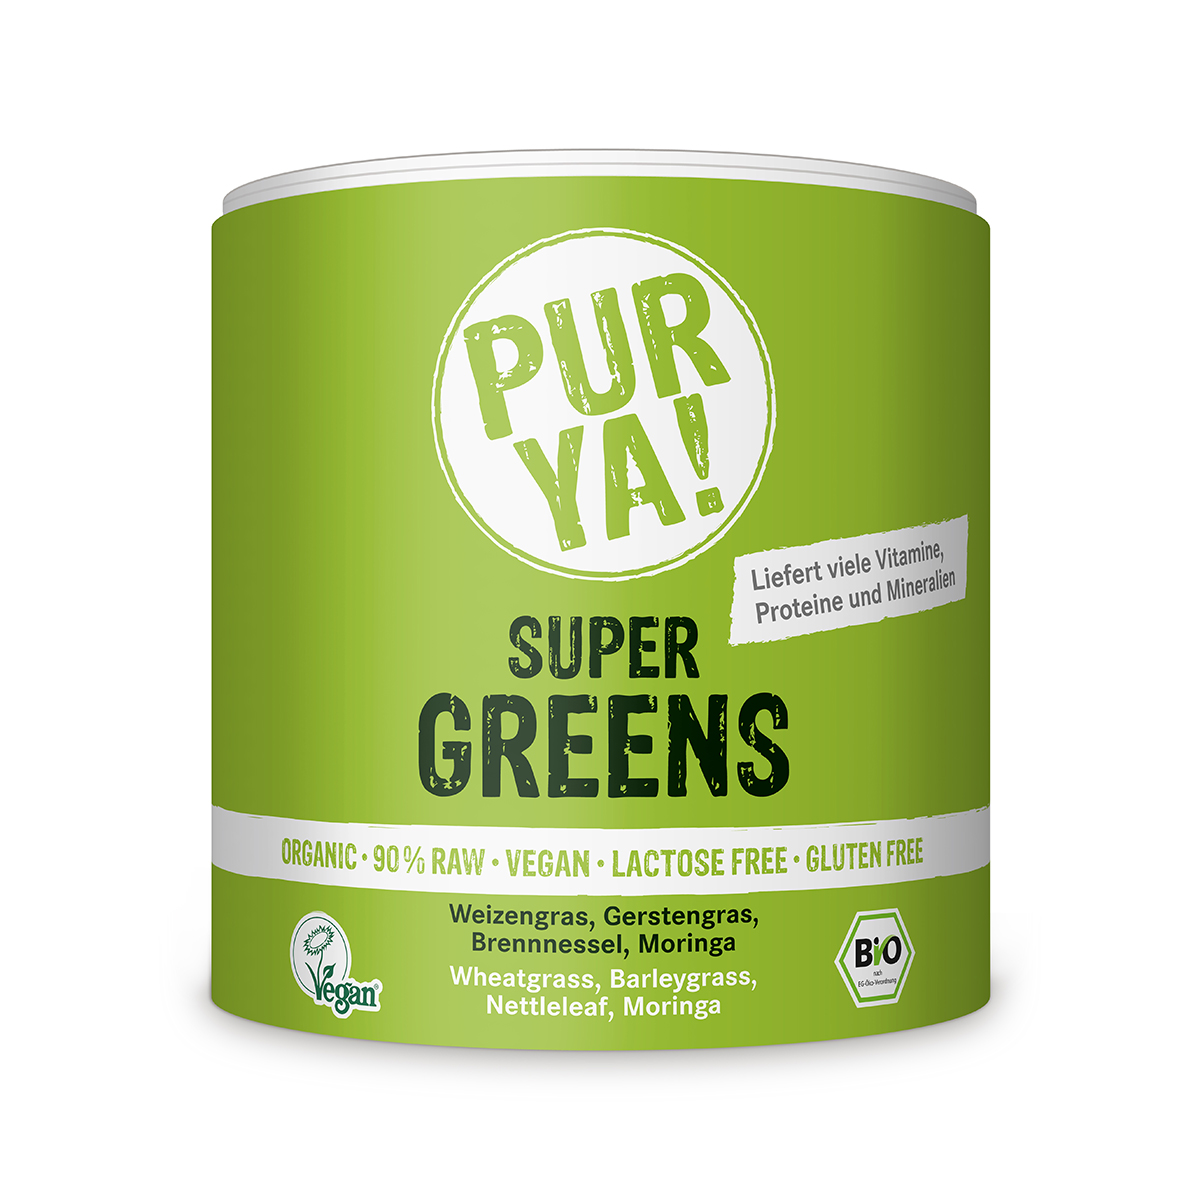 PUR YA! mix vegetable powder Super greens gluten free BIO